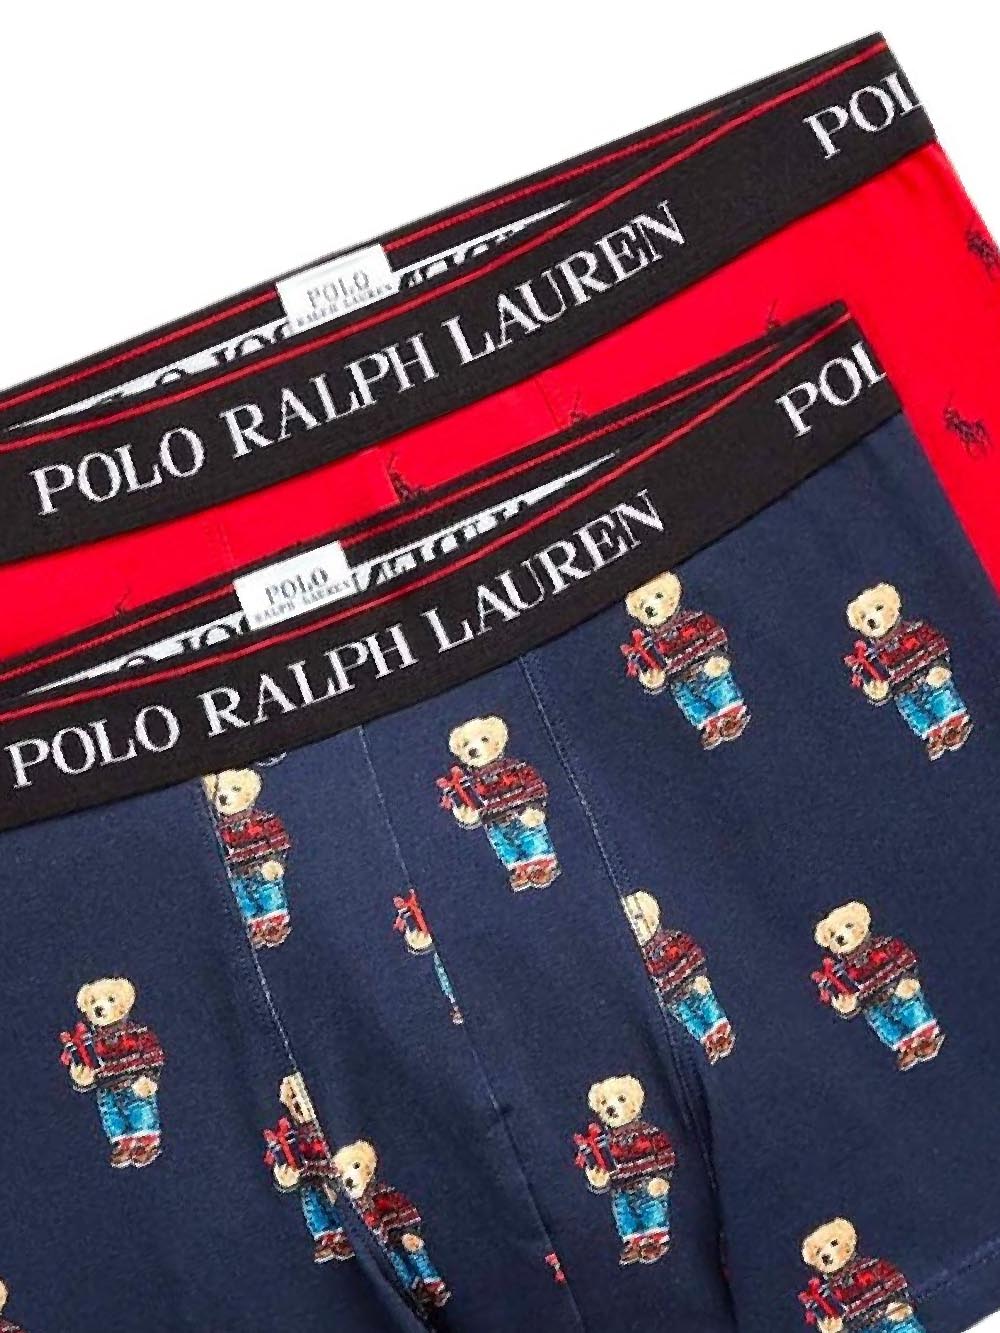 Polo Ralph Lauren Boxer Uomo 714916019 Blu/rosso